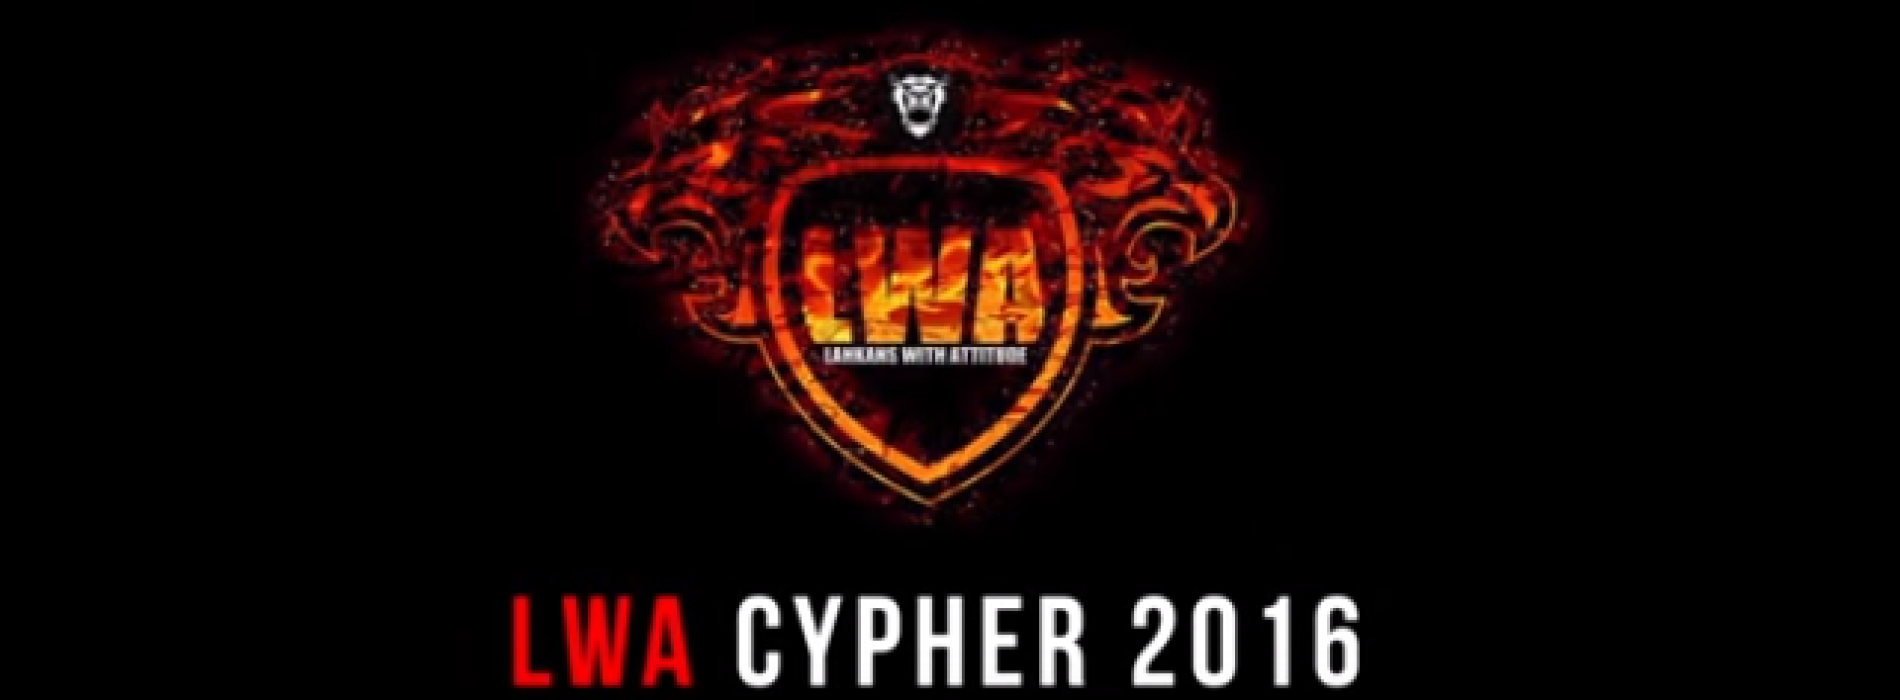 LWA CYPHER 2016 (Lankans With Attitude)